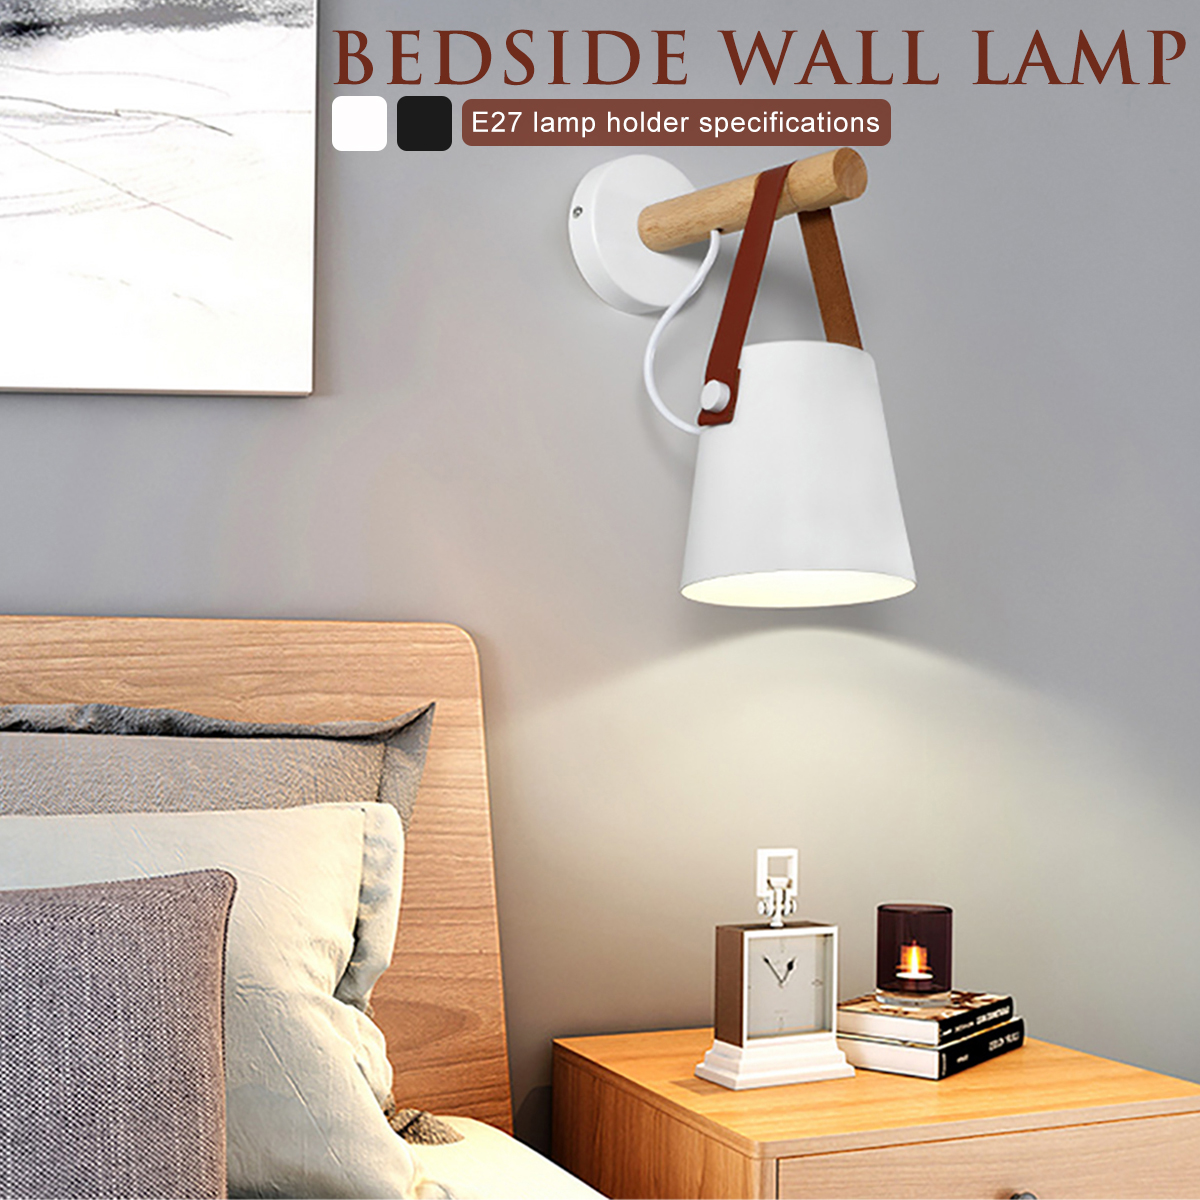 Wall-mounted-Lamp-Bedside-Hanging-Wood-Lights-Living-Room-Bedroom-Decor-220V-1689915-2